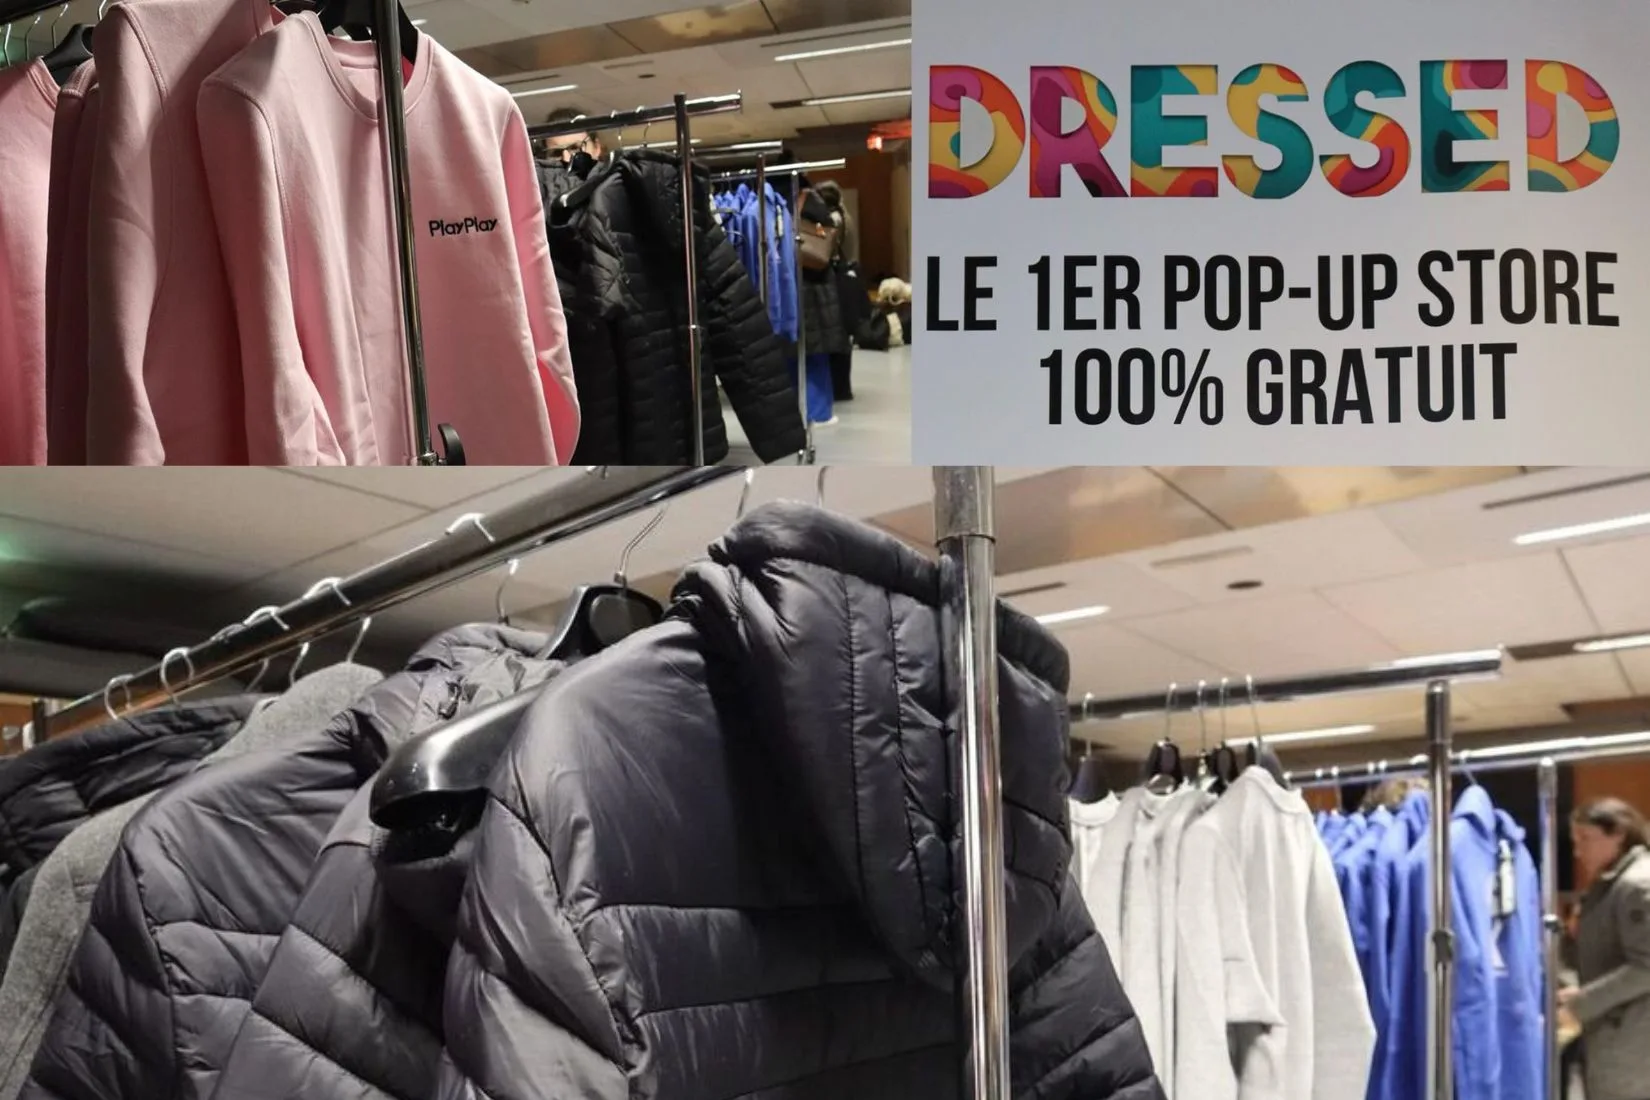 Intérieur du pop-up store Dressed avec un signe annonçant un magasin 100% gratuit et des vêtements suspendus sur des cintres.